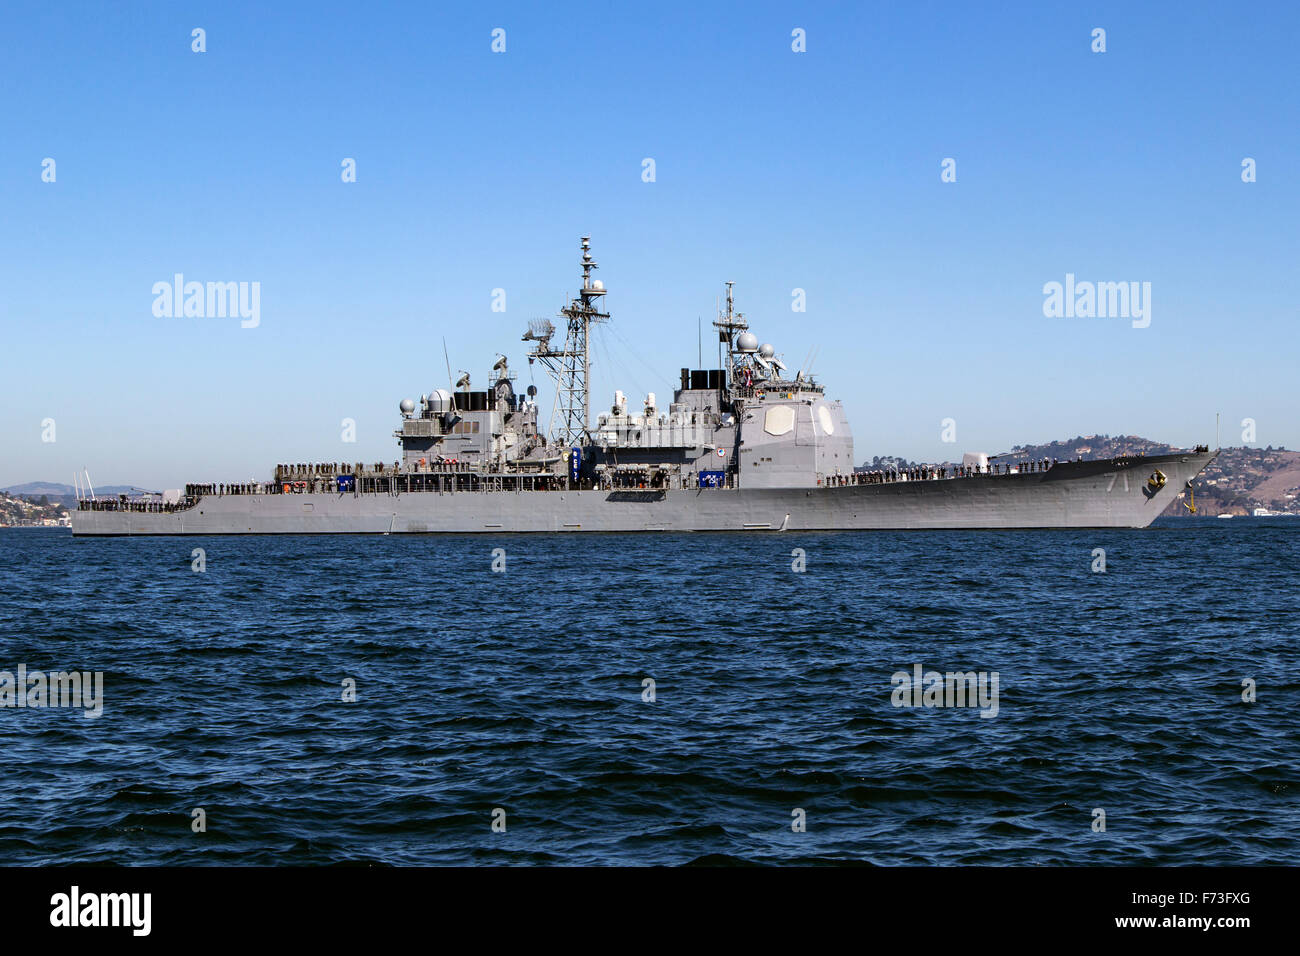 Avec la doublure de l'équipage les rails la classe Arleigh Burke destroyer lance-missiles USS Ross (DDG-71) entre dans la baie de San Francisco. Banque D'Images